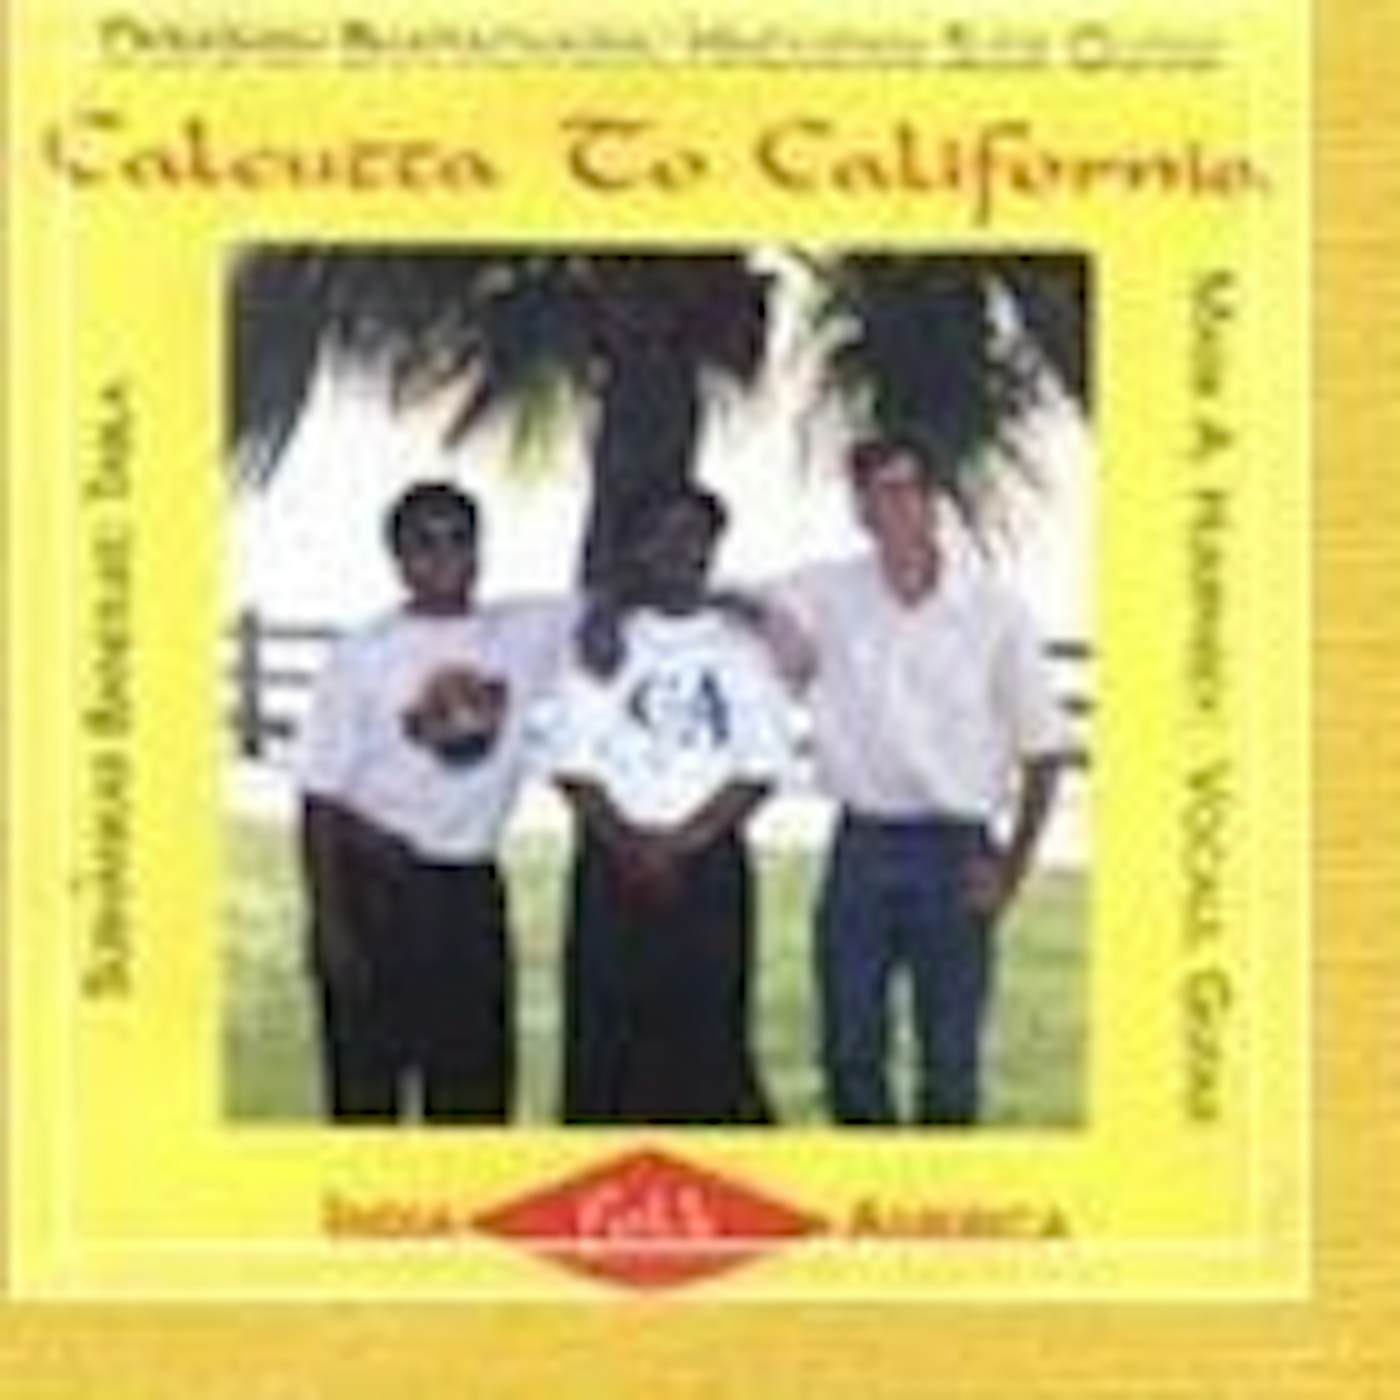 Debashish Bhattacharya CALCUTTA TO CALIFORNIA CD